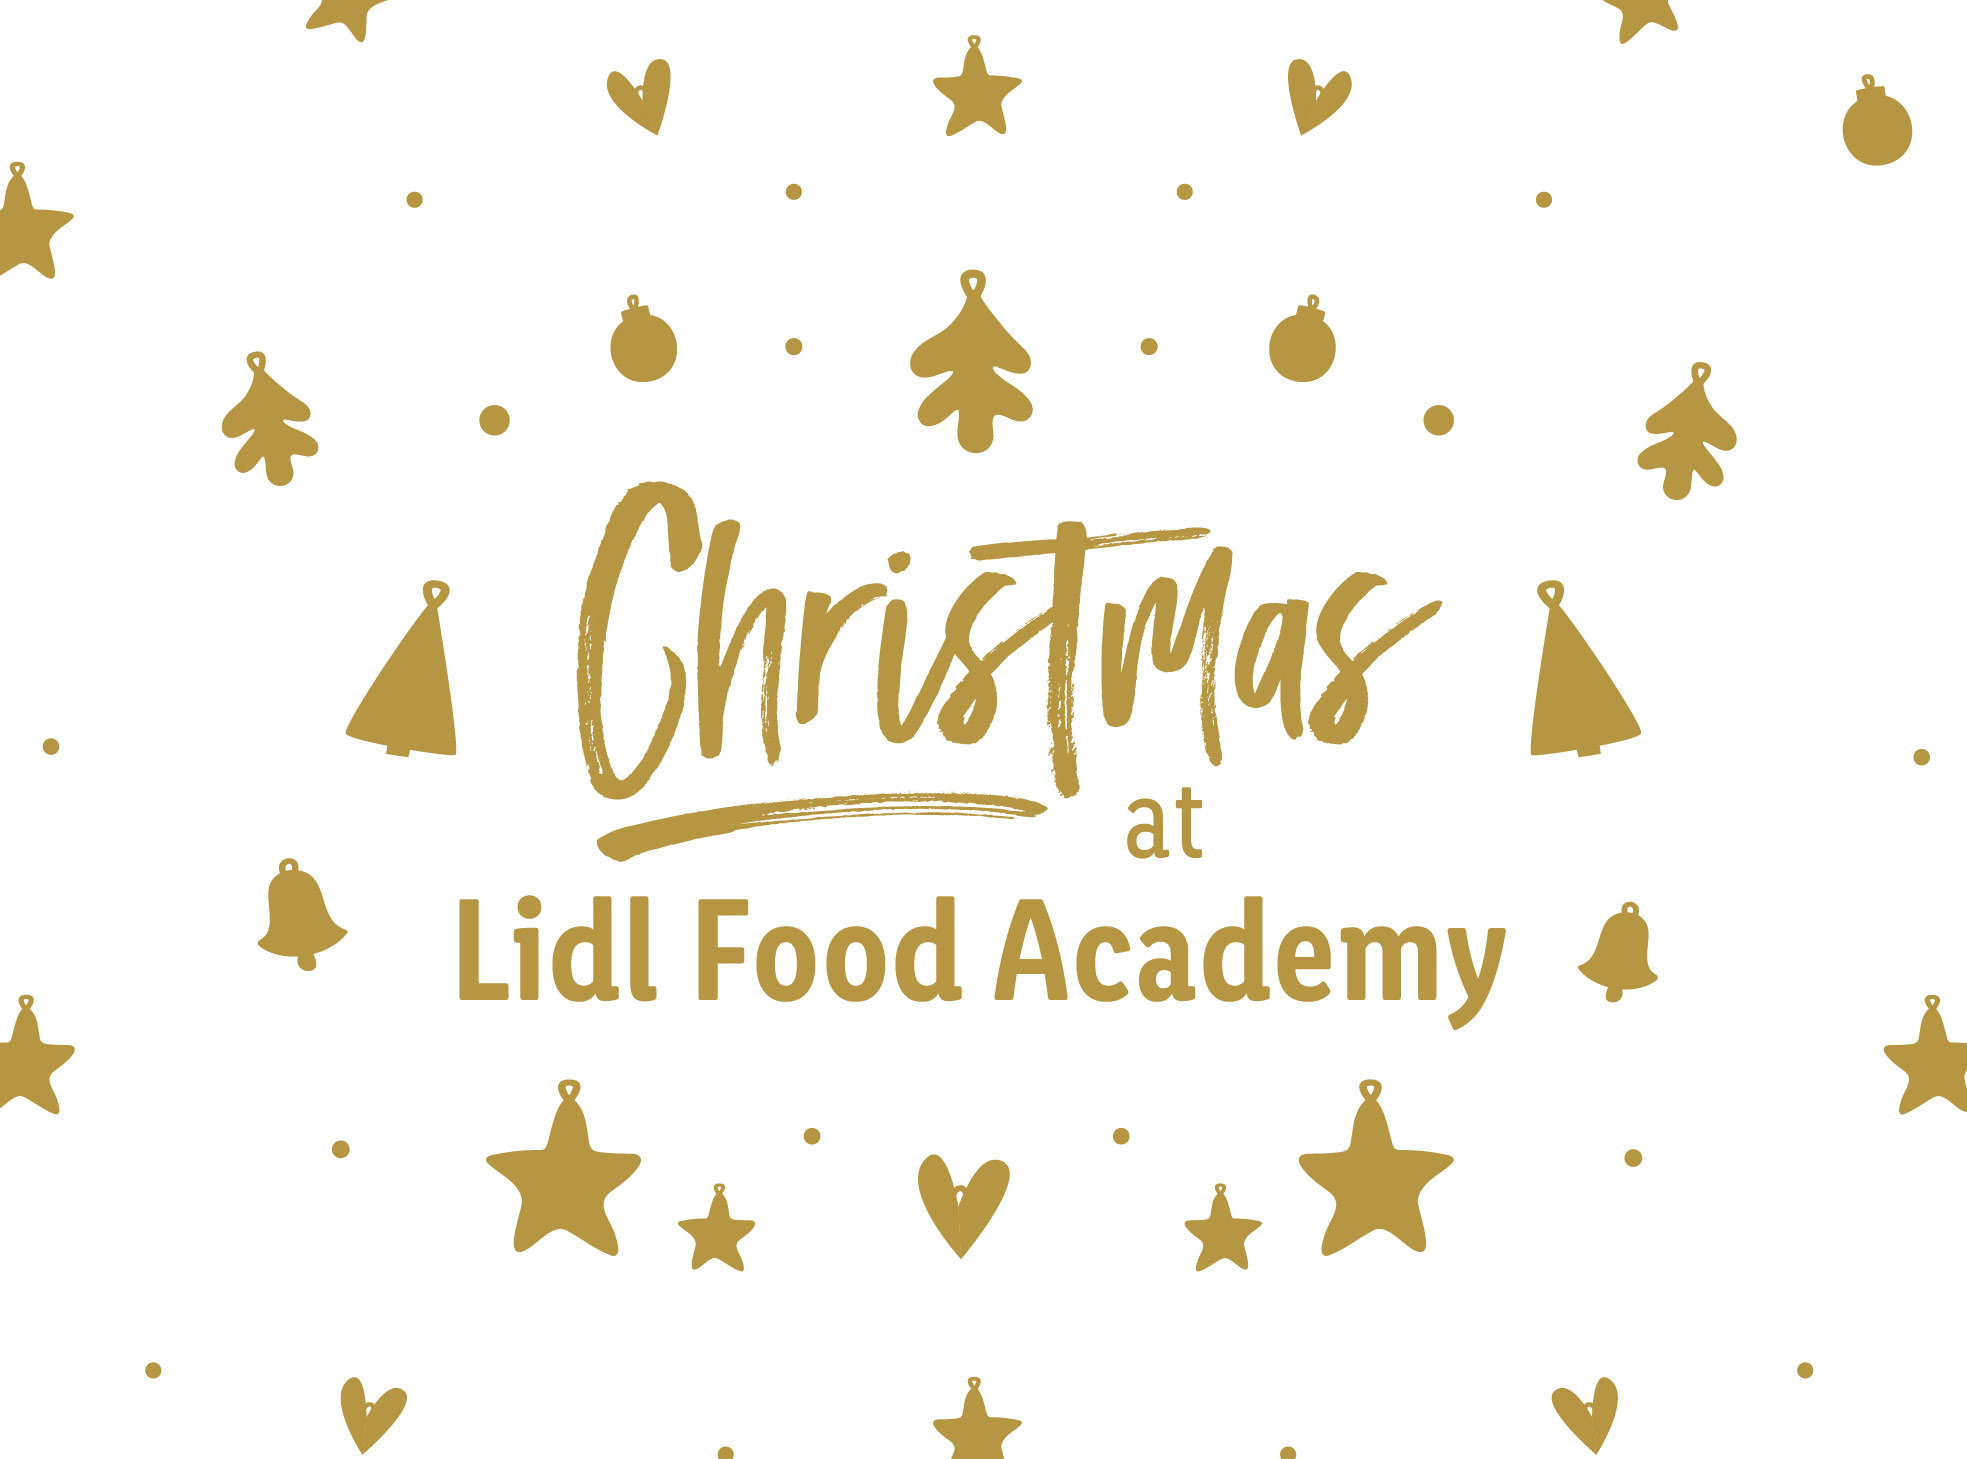 Τα Χριστούγεννα έρχονται και φέτος στη Lidl Food Academy